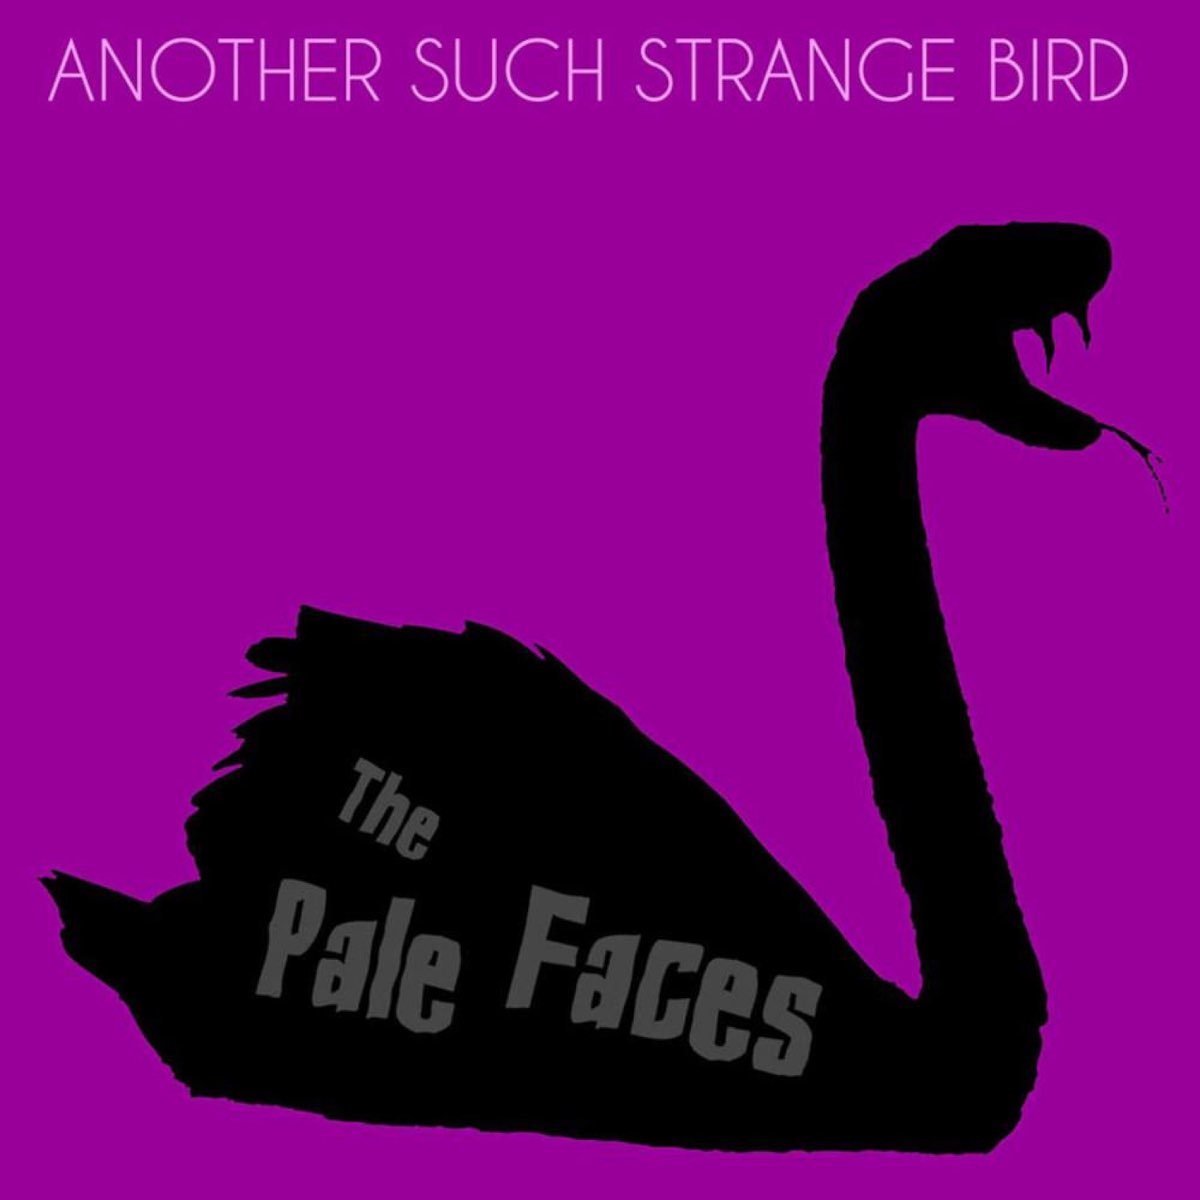 Birdy strange birds. Super Birds обложка. Birdy Strange Birds Ноты. Kuma the Bird обложки песен. Paleface logo.